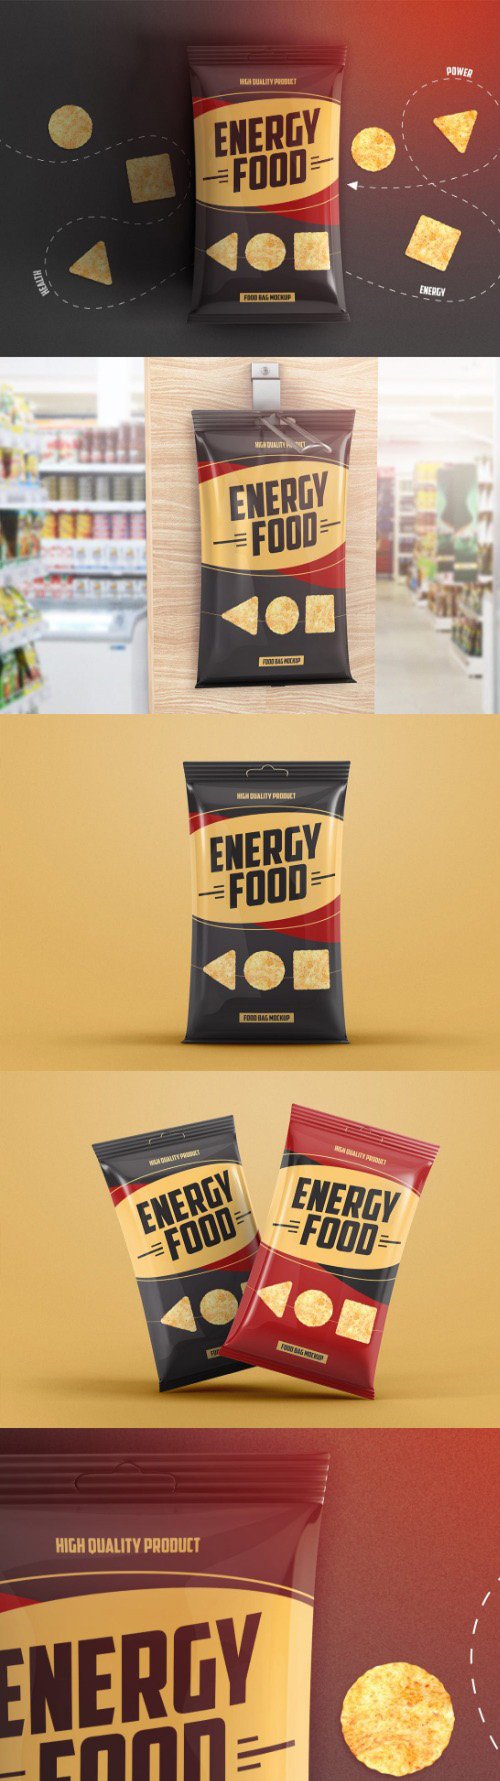 Food Bag Product Mockup